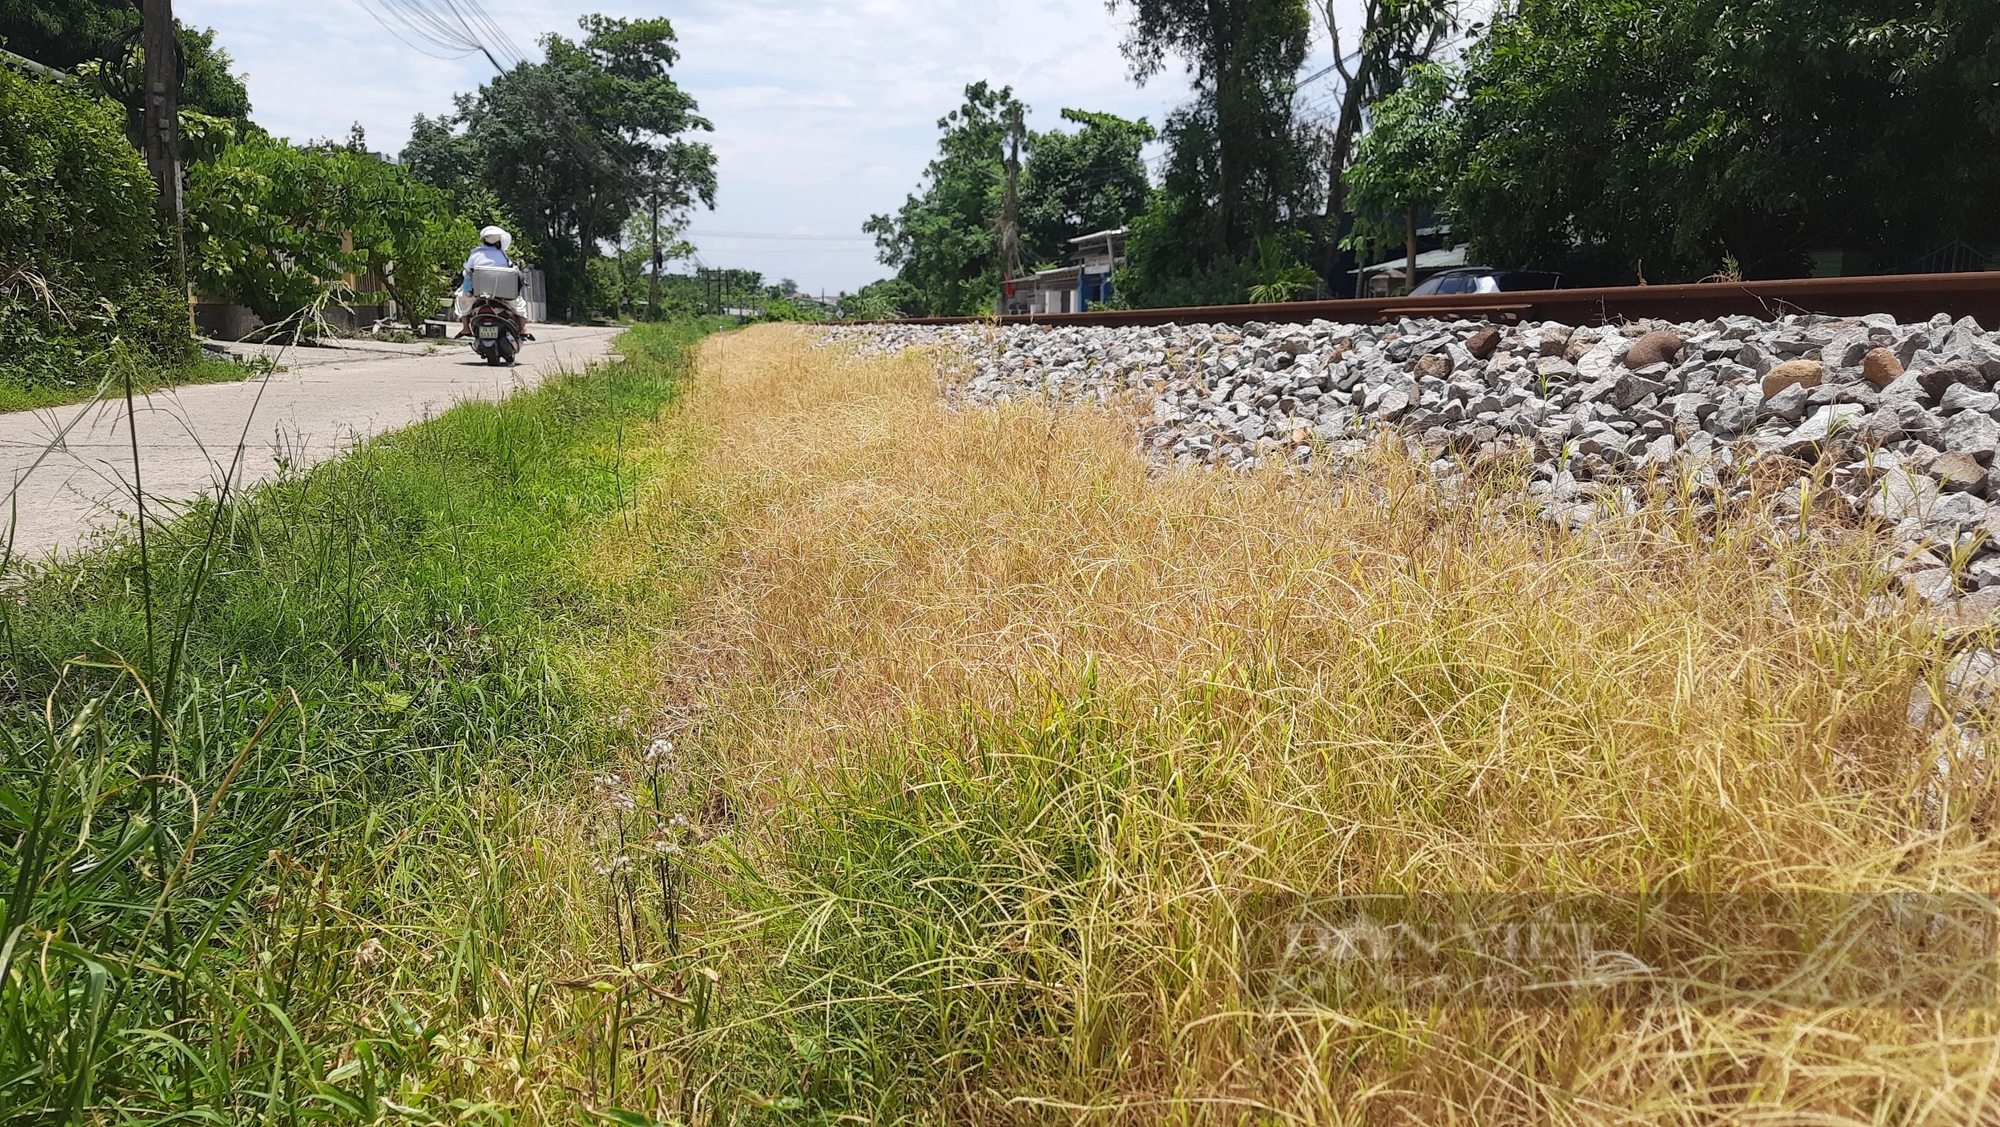 Phun thuốc trừ cỏ dọc tuyến đường sắt đi qua khu dân cư ở Quảng Trị, người dân lo lắng bất an- Ảnh 2.